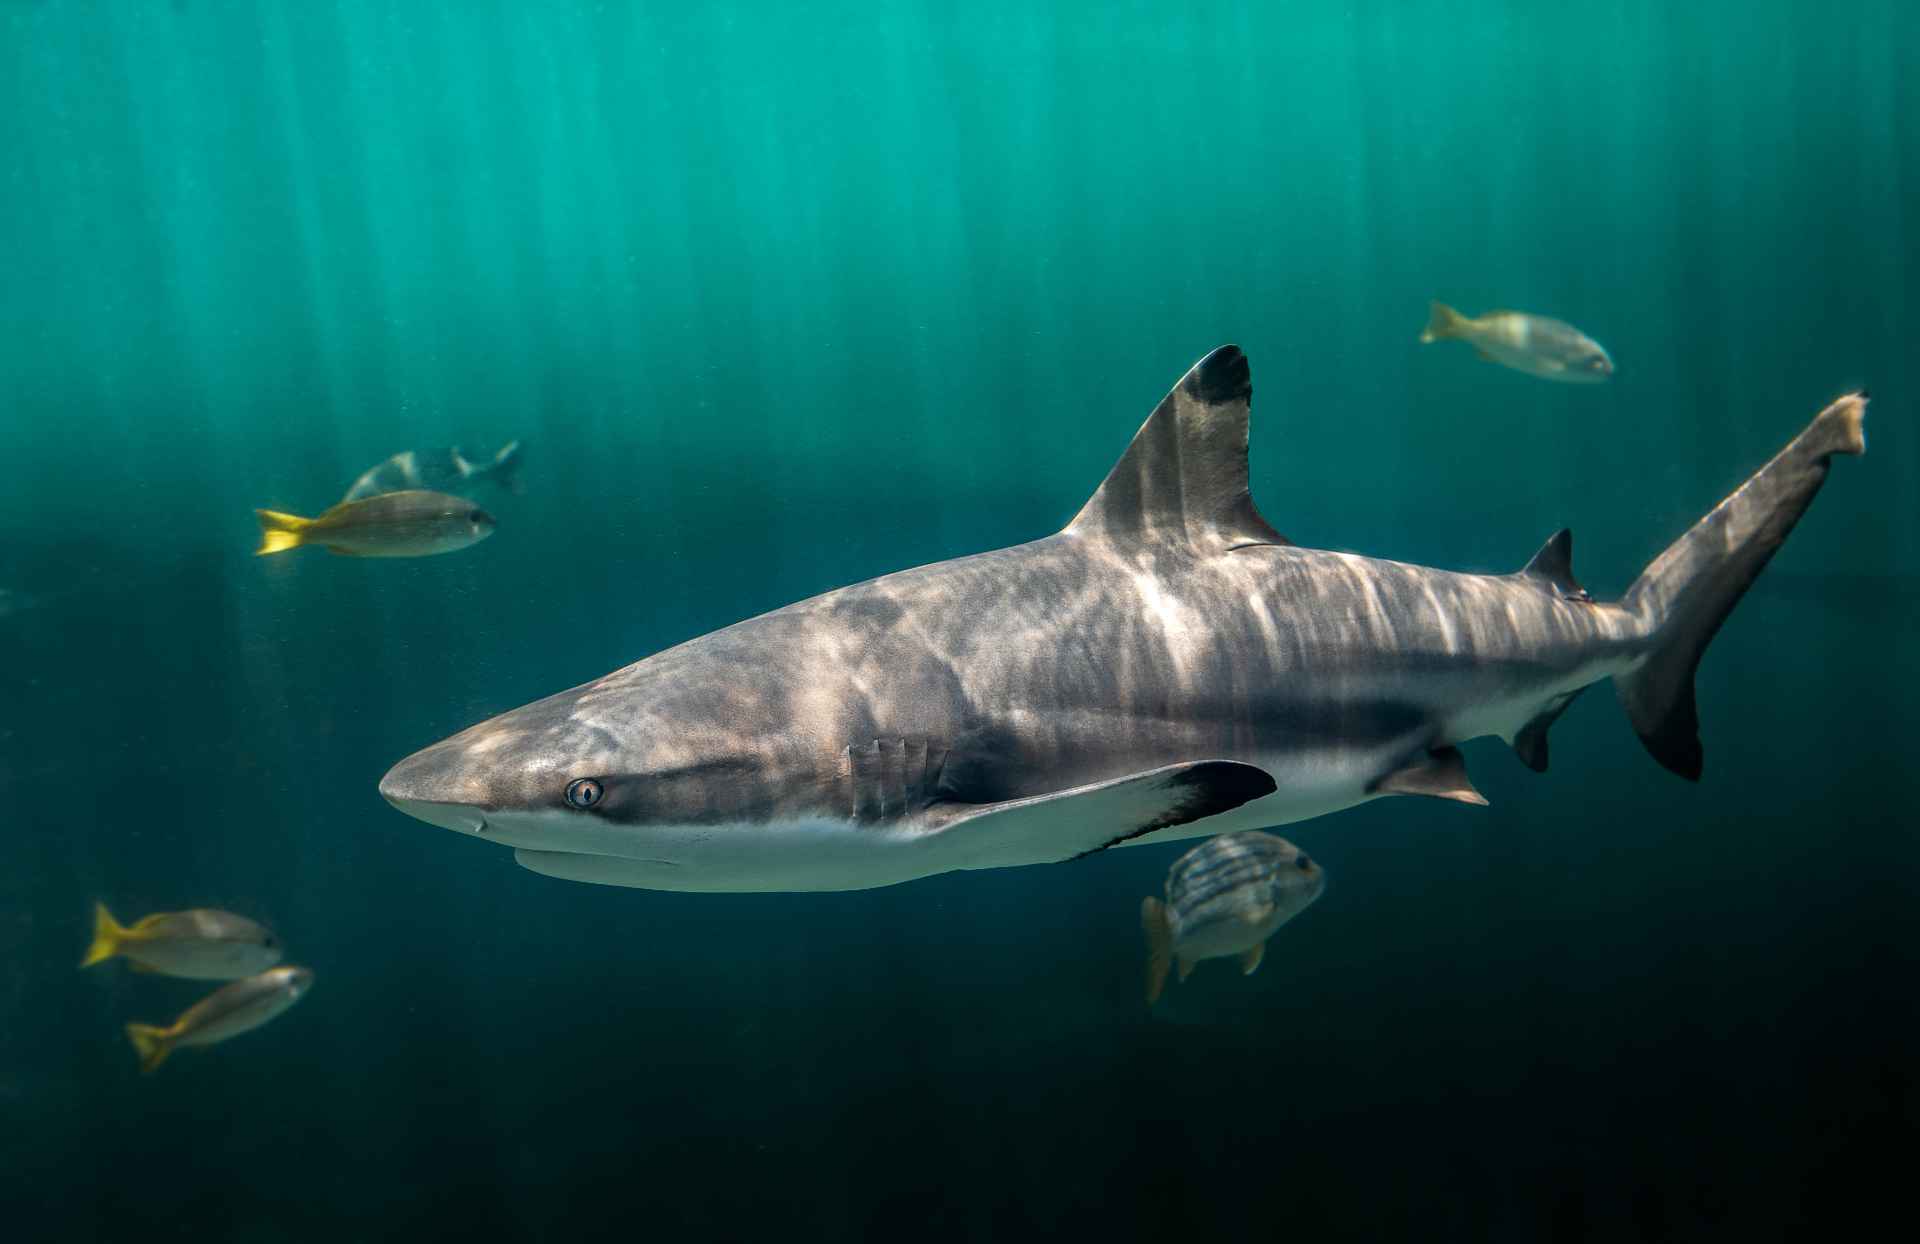 Requin pointe noire nageant dans les eaux chaudes du Pacifique Sud